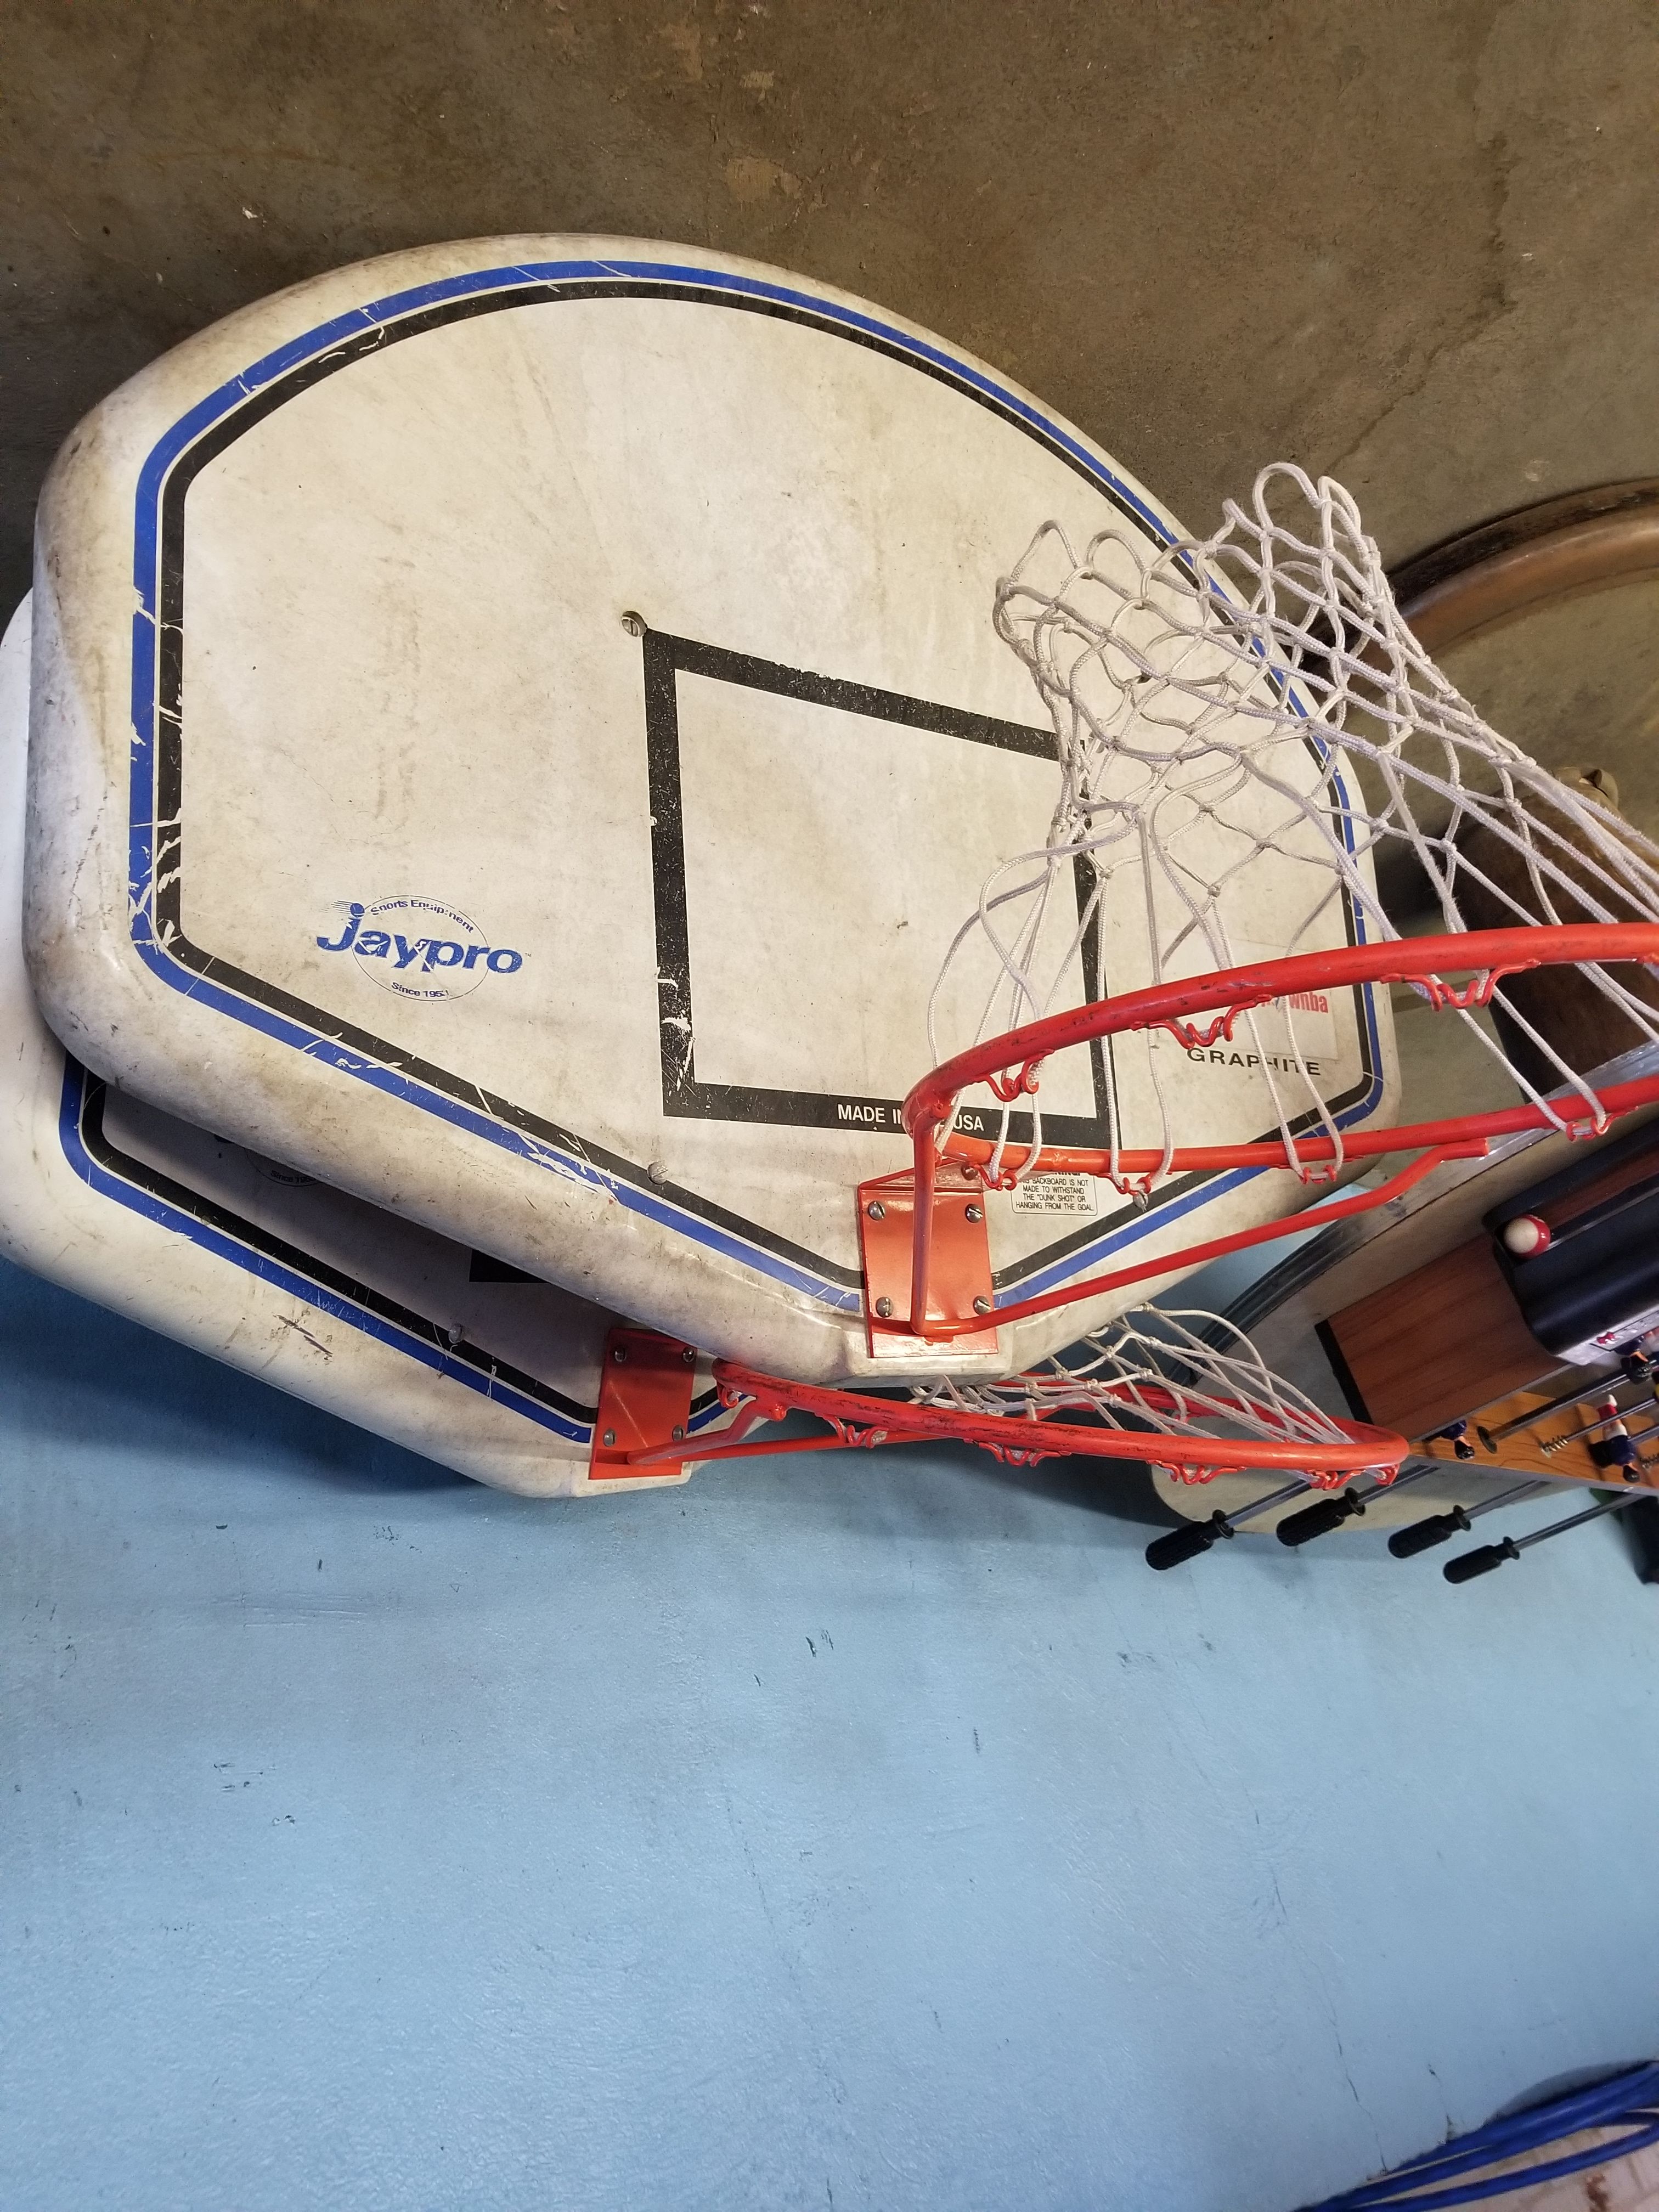 2 basketball hoops